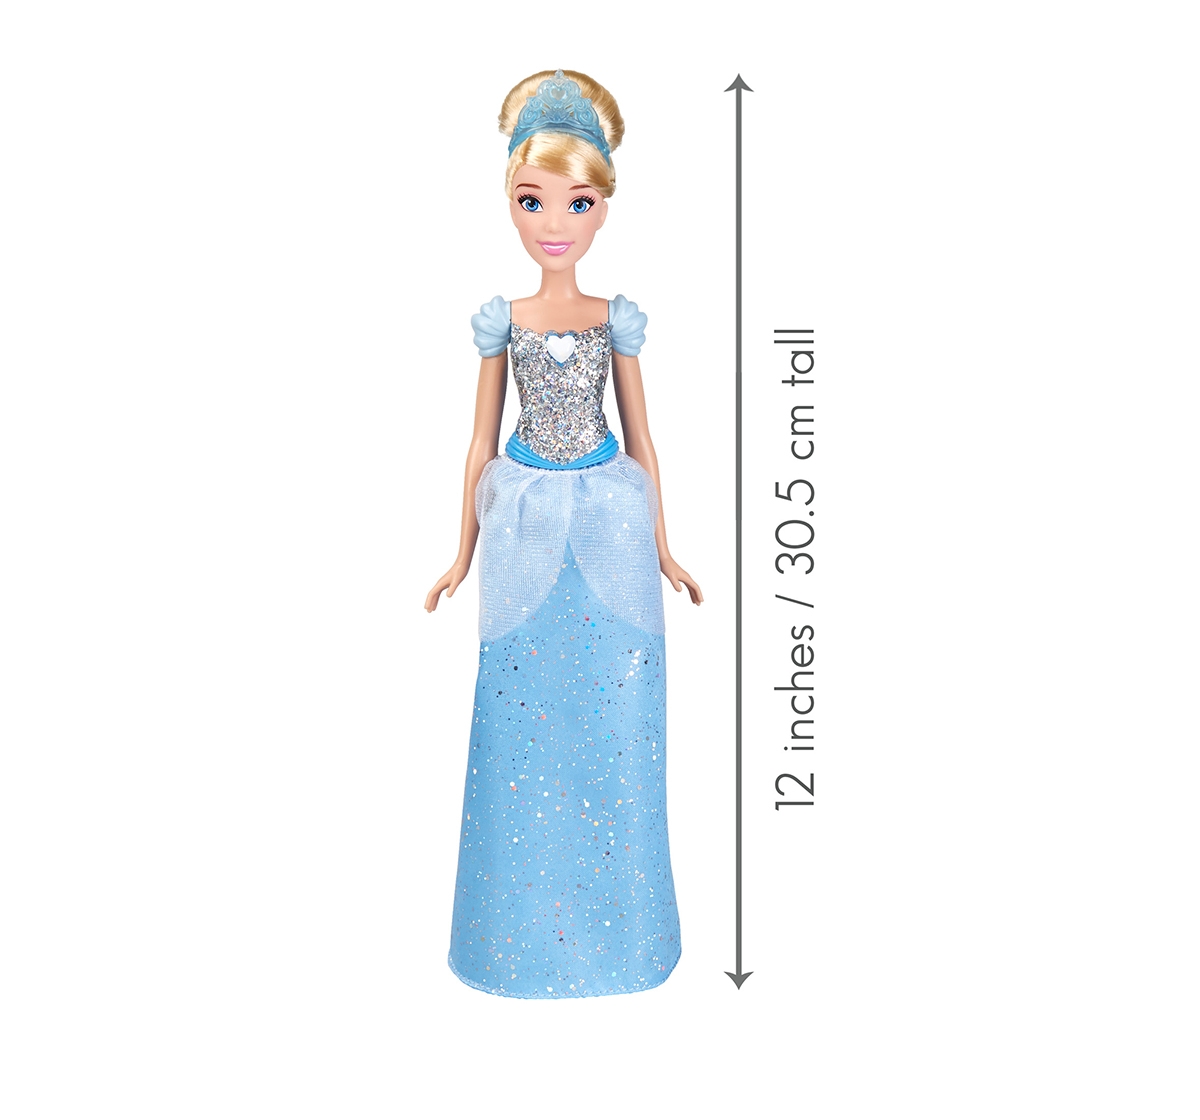 DISNEY | Disney Princess Royal Shimmer Cinderella Dolls & Accessories for Girls age 3Y+ 4